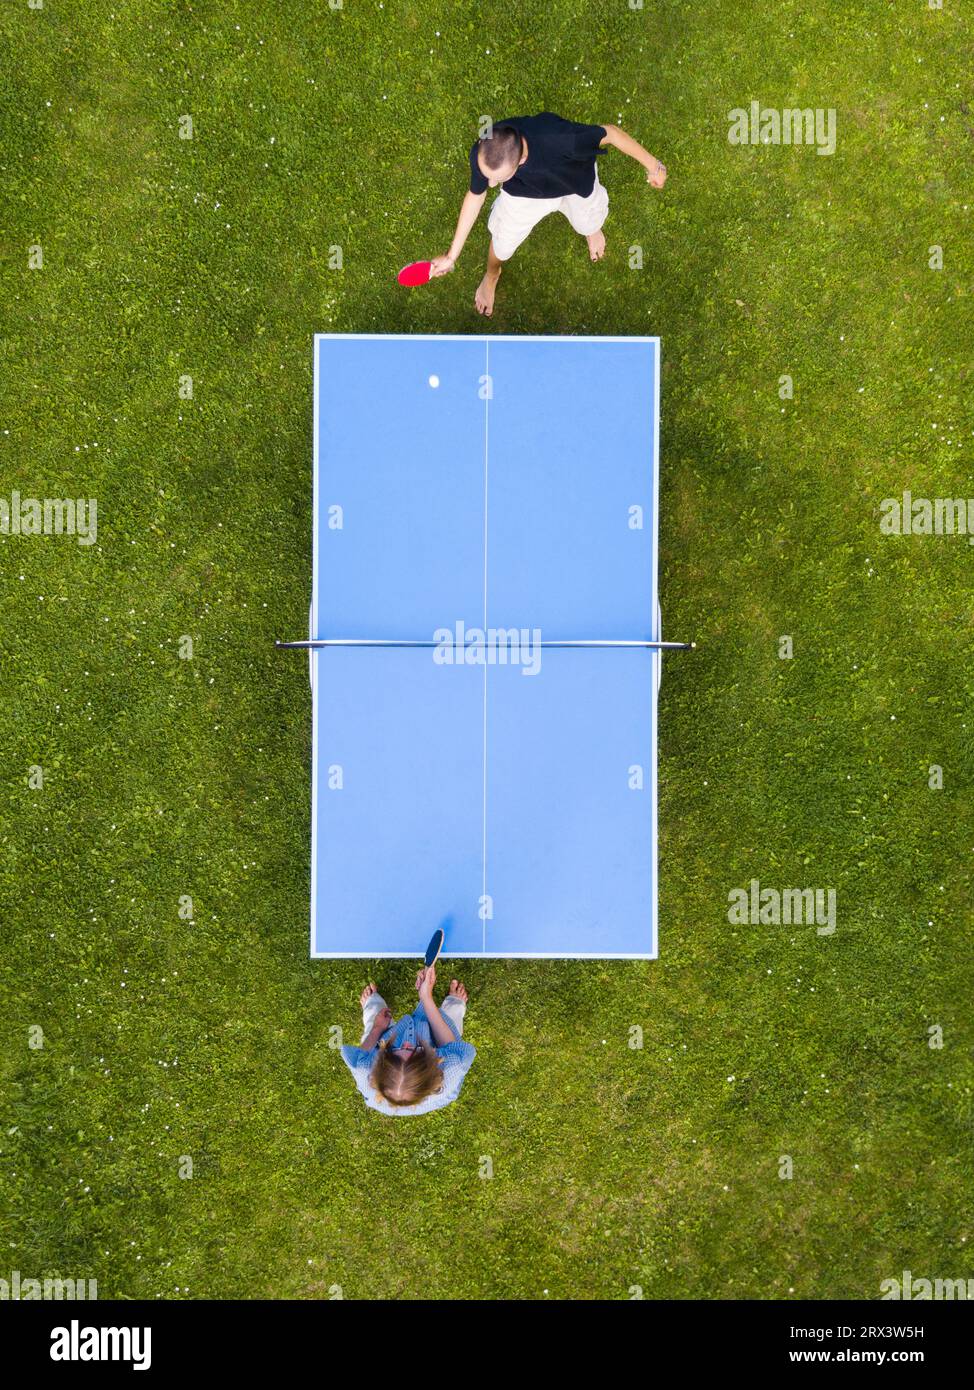 Vue aérienne personnes jouant ping-pong match en plein air. Vue de dessus deux garçons jouant au tennis de table sur une pelouse en herbe verte. Vue aérienne sport de plein air Banque D'Images